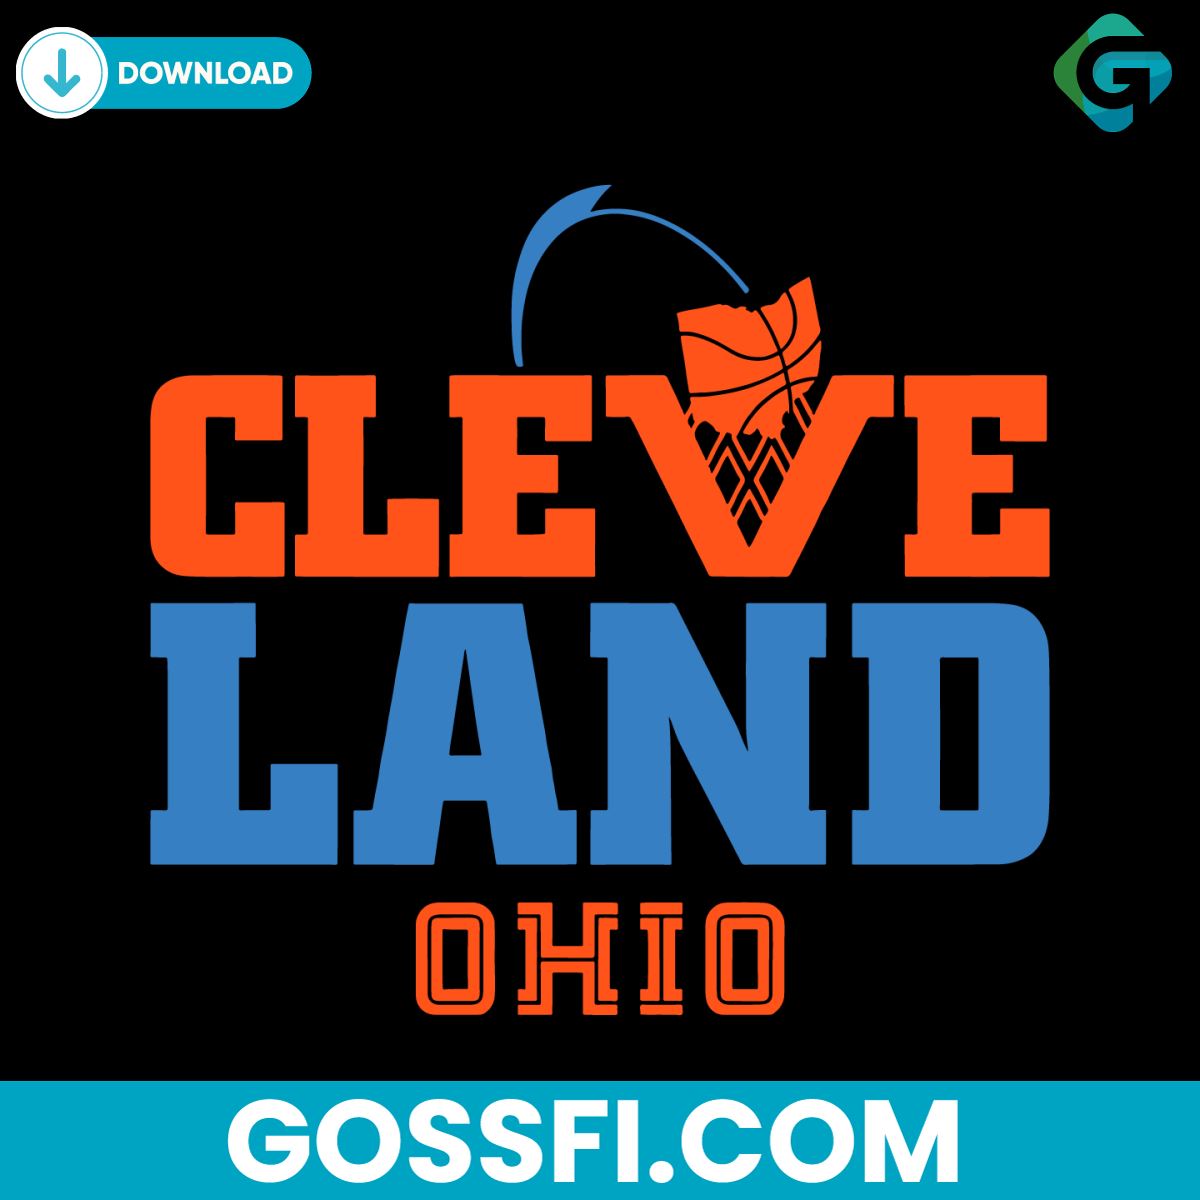 cleveland-basketball-net-ohio-svg-digital-download